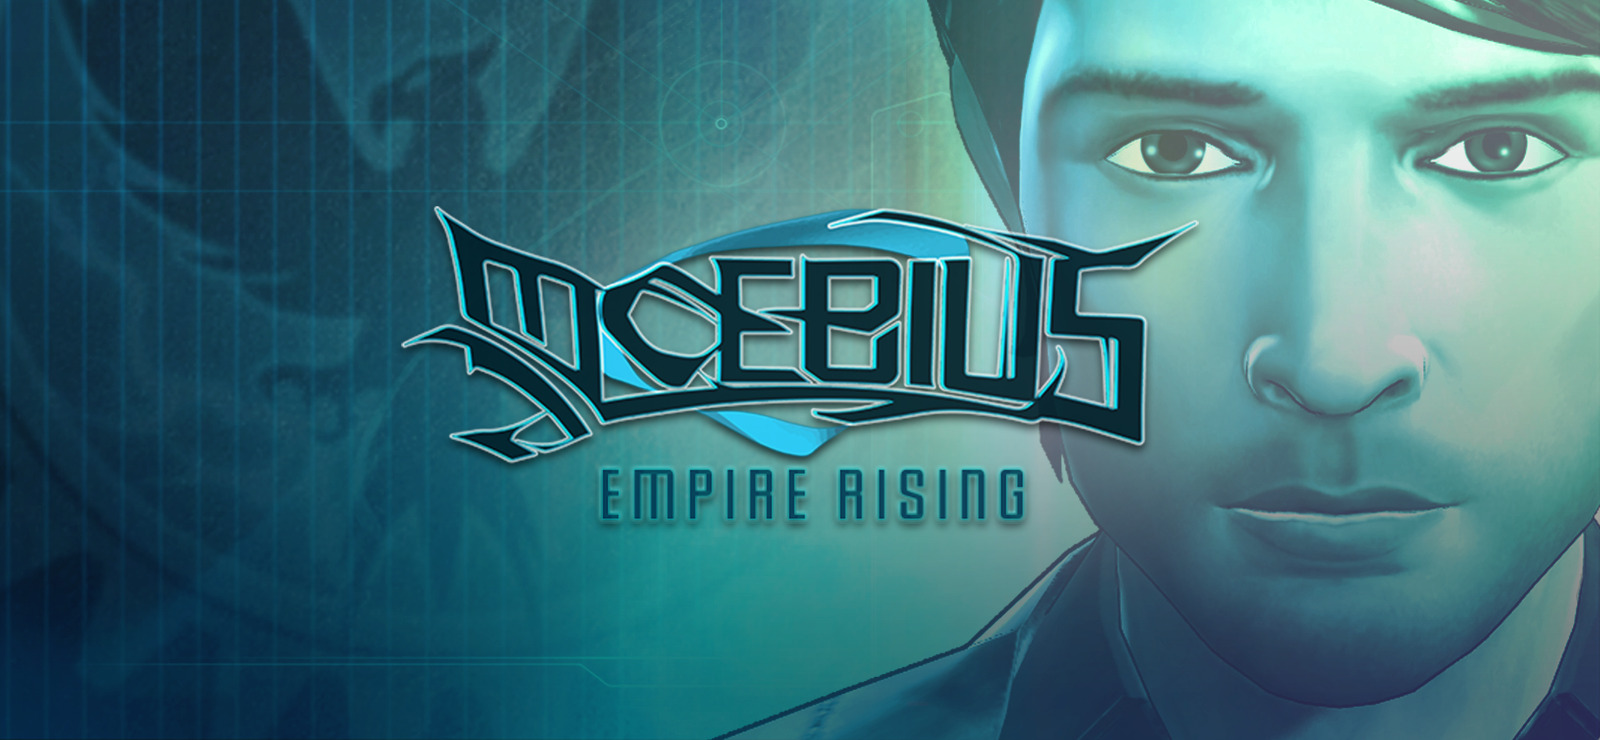 moebius empire rising sequel